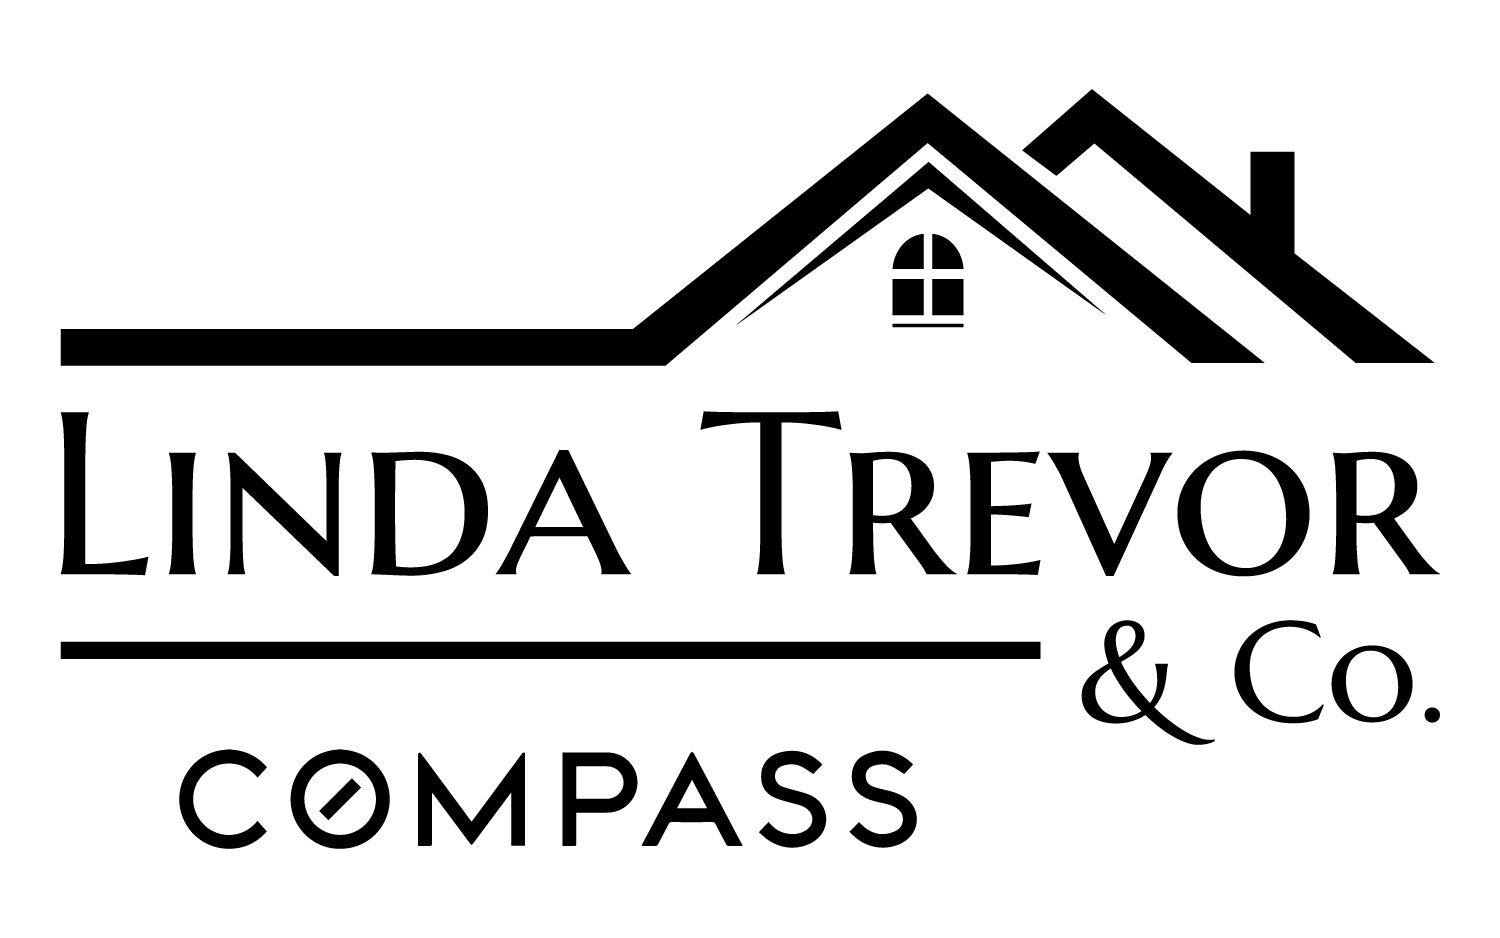 Linda Trevor & Co. of Compass